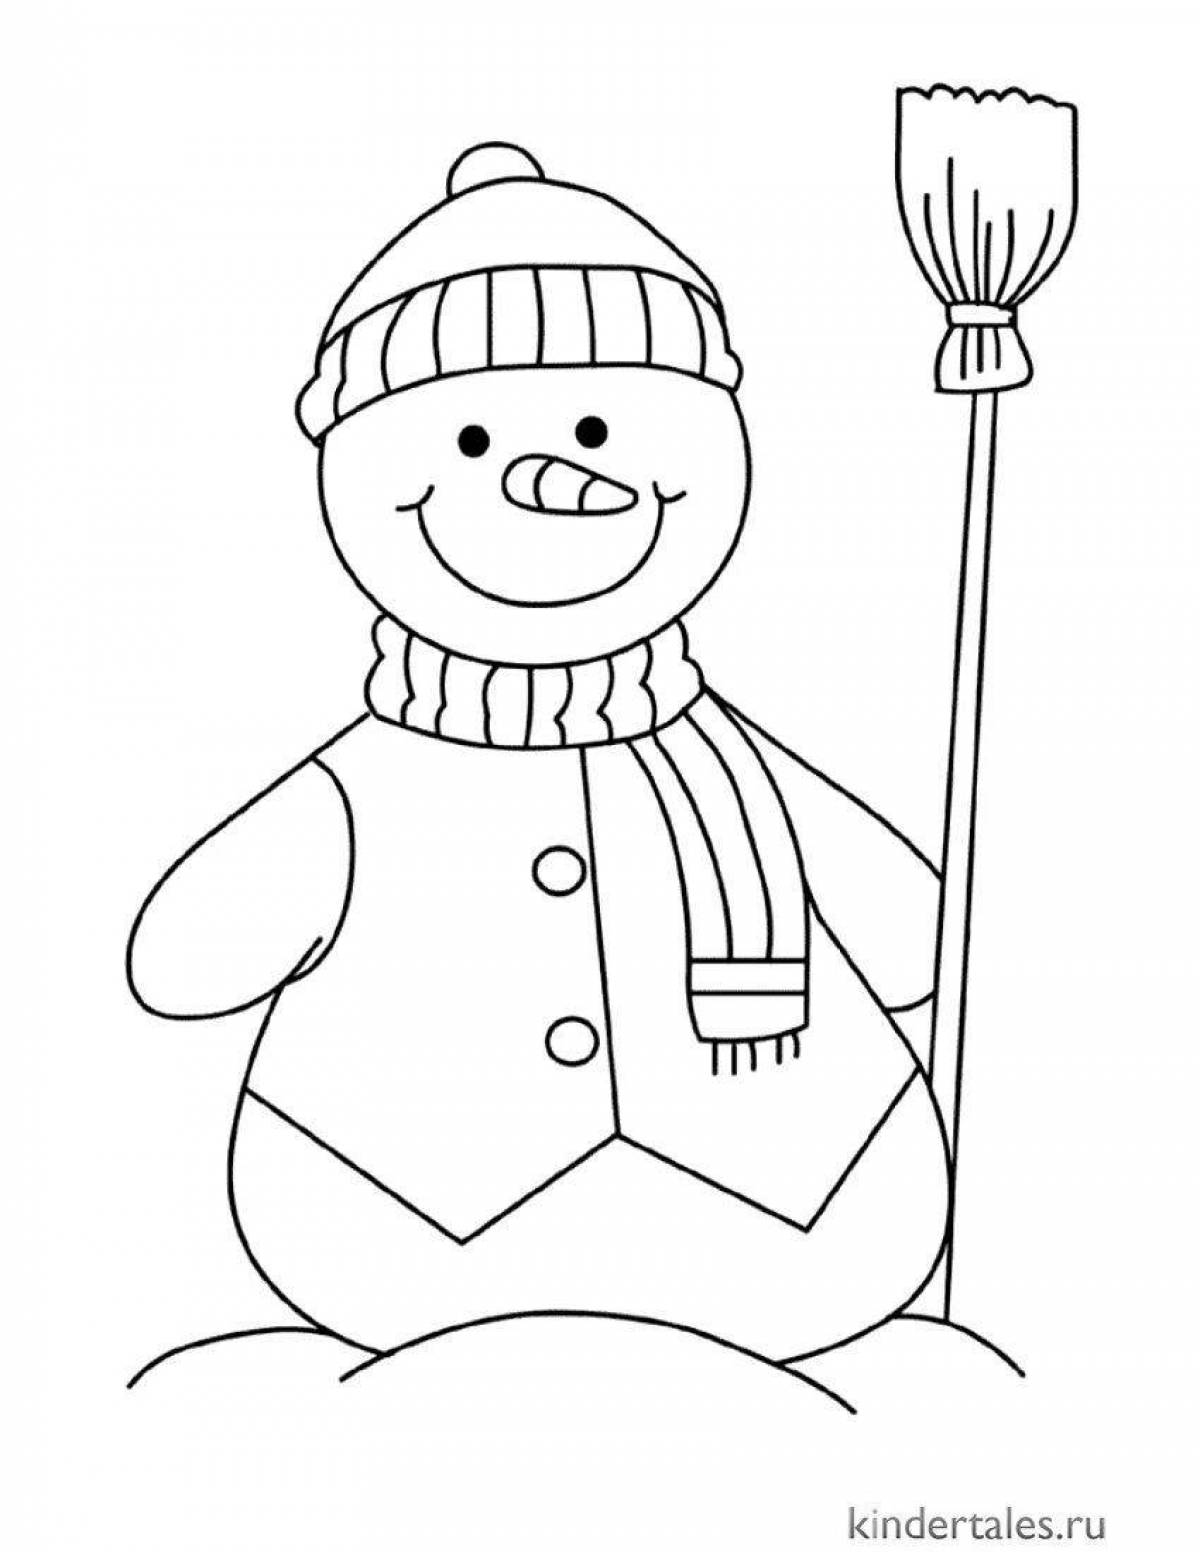 Увлекательная раскраска снеговик для детей 3-4 лет